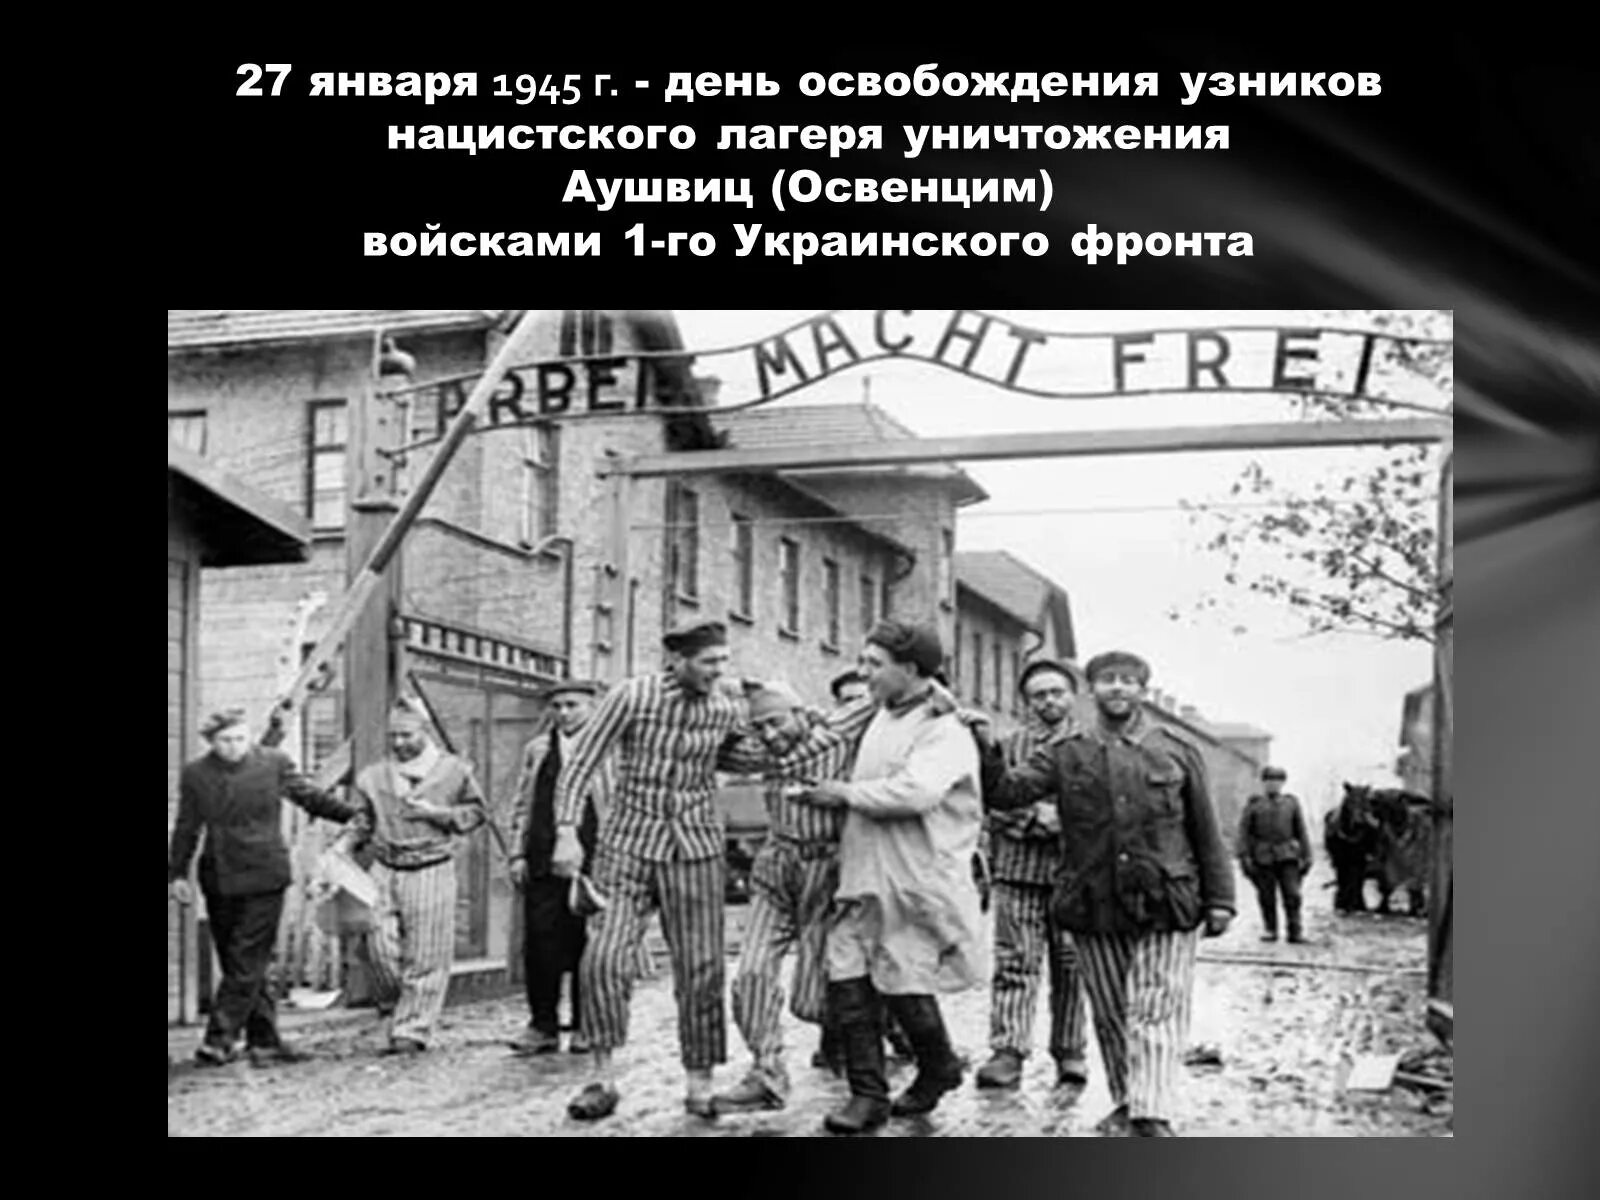 Освобождение лагеря смерти. 27 Января 1945 освобождение лагеря смерти Освенцим советскими солдатами. 27 Января 1945 г. - советские войска освободили узников Освенцима. Освобождение узников Освенцима 1945. 27 Января день освобождения узников Освенцима.